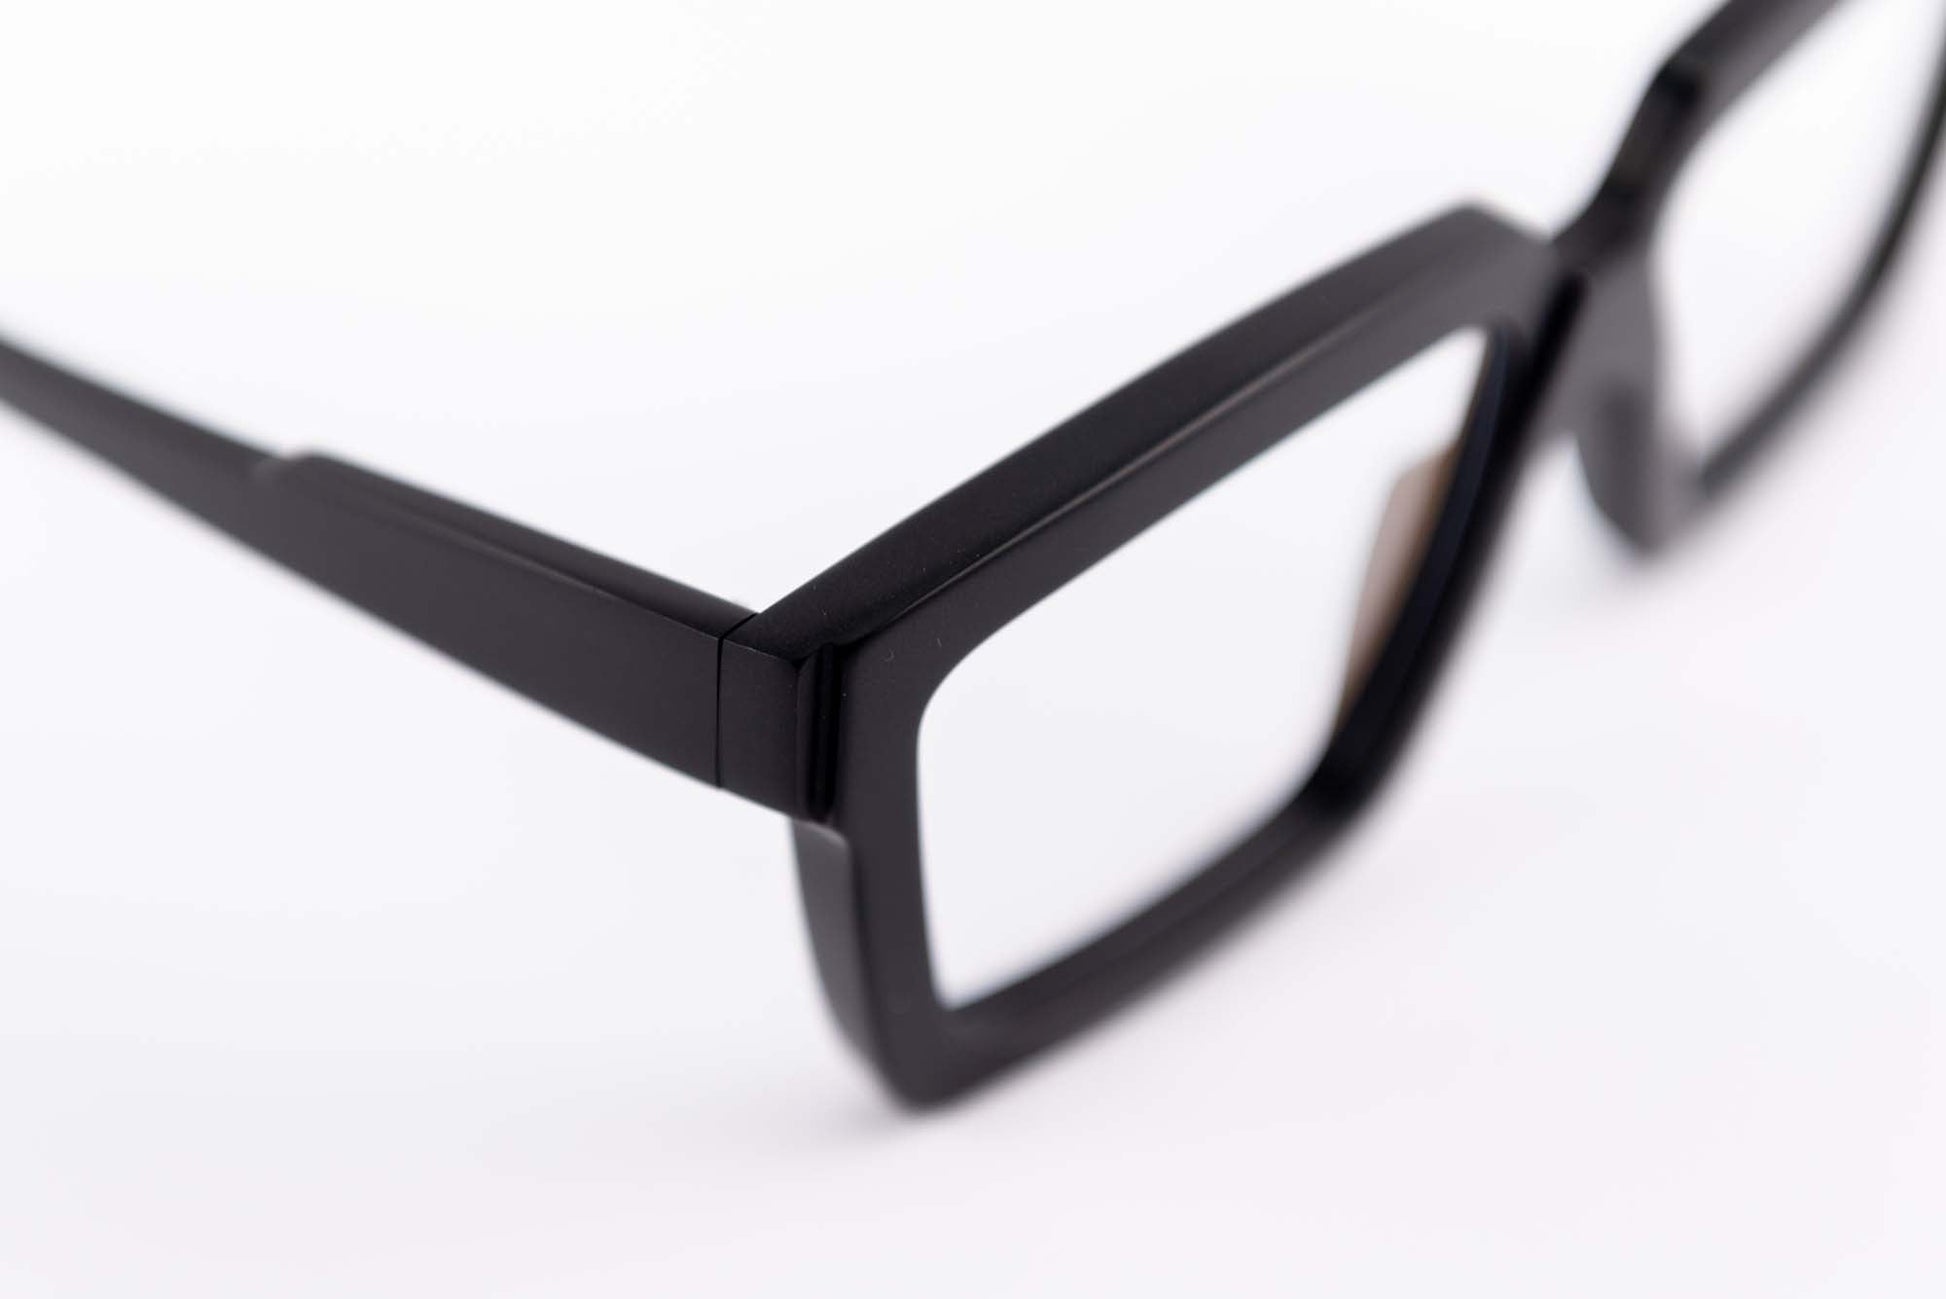 Kuboraum Occhiali da vista Nero / Acetato / Squadrato Kuboraum Maske K26 BM: occhiale in acetato nero squadrato da vista